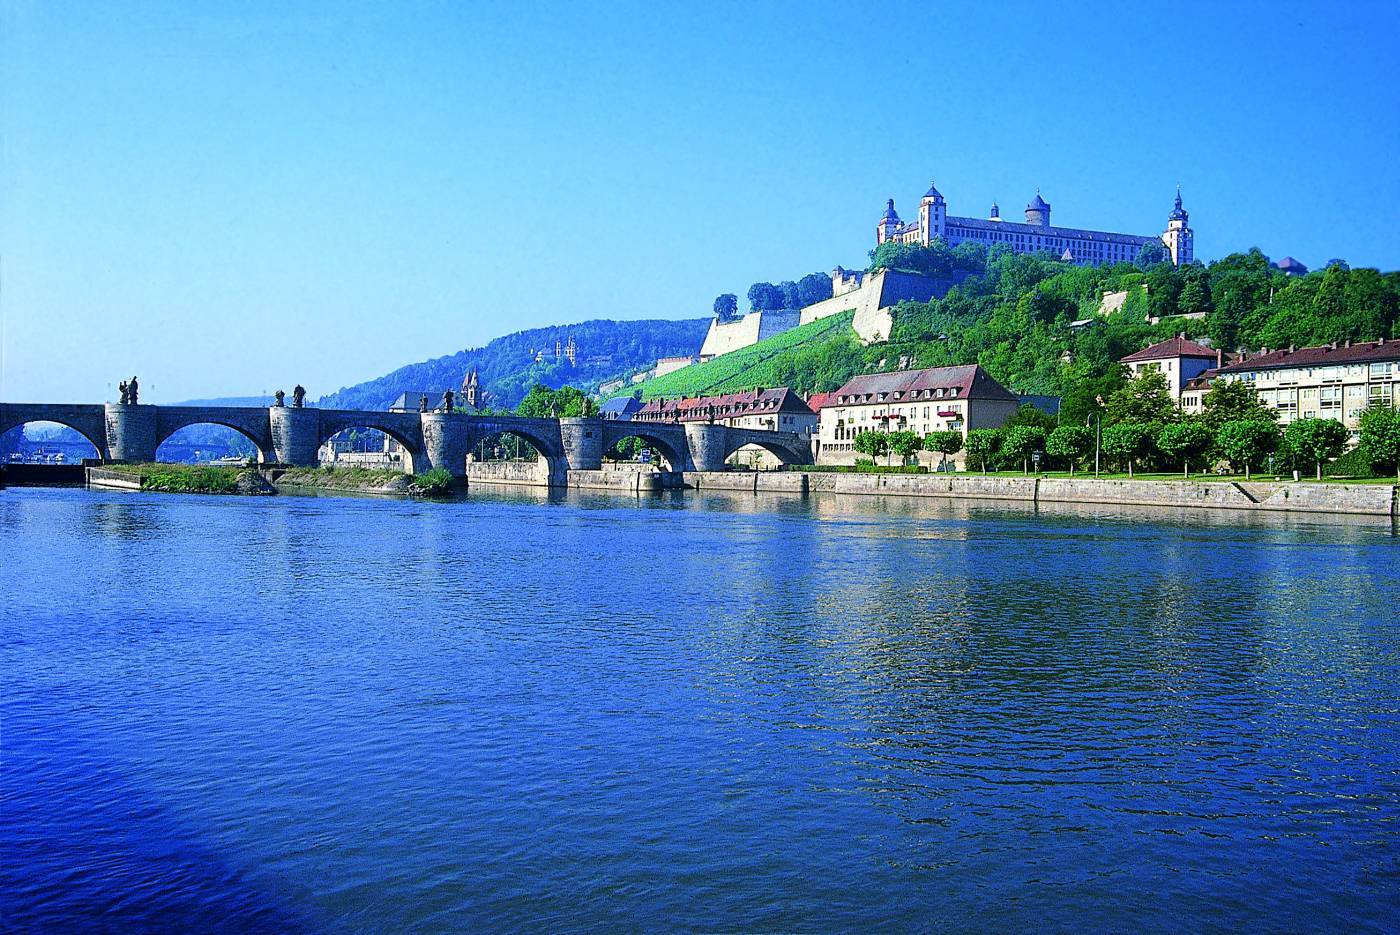 Festung und Mainbrücke Würzburg.
